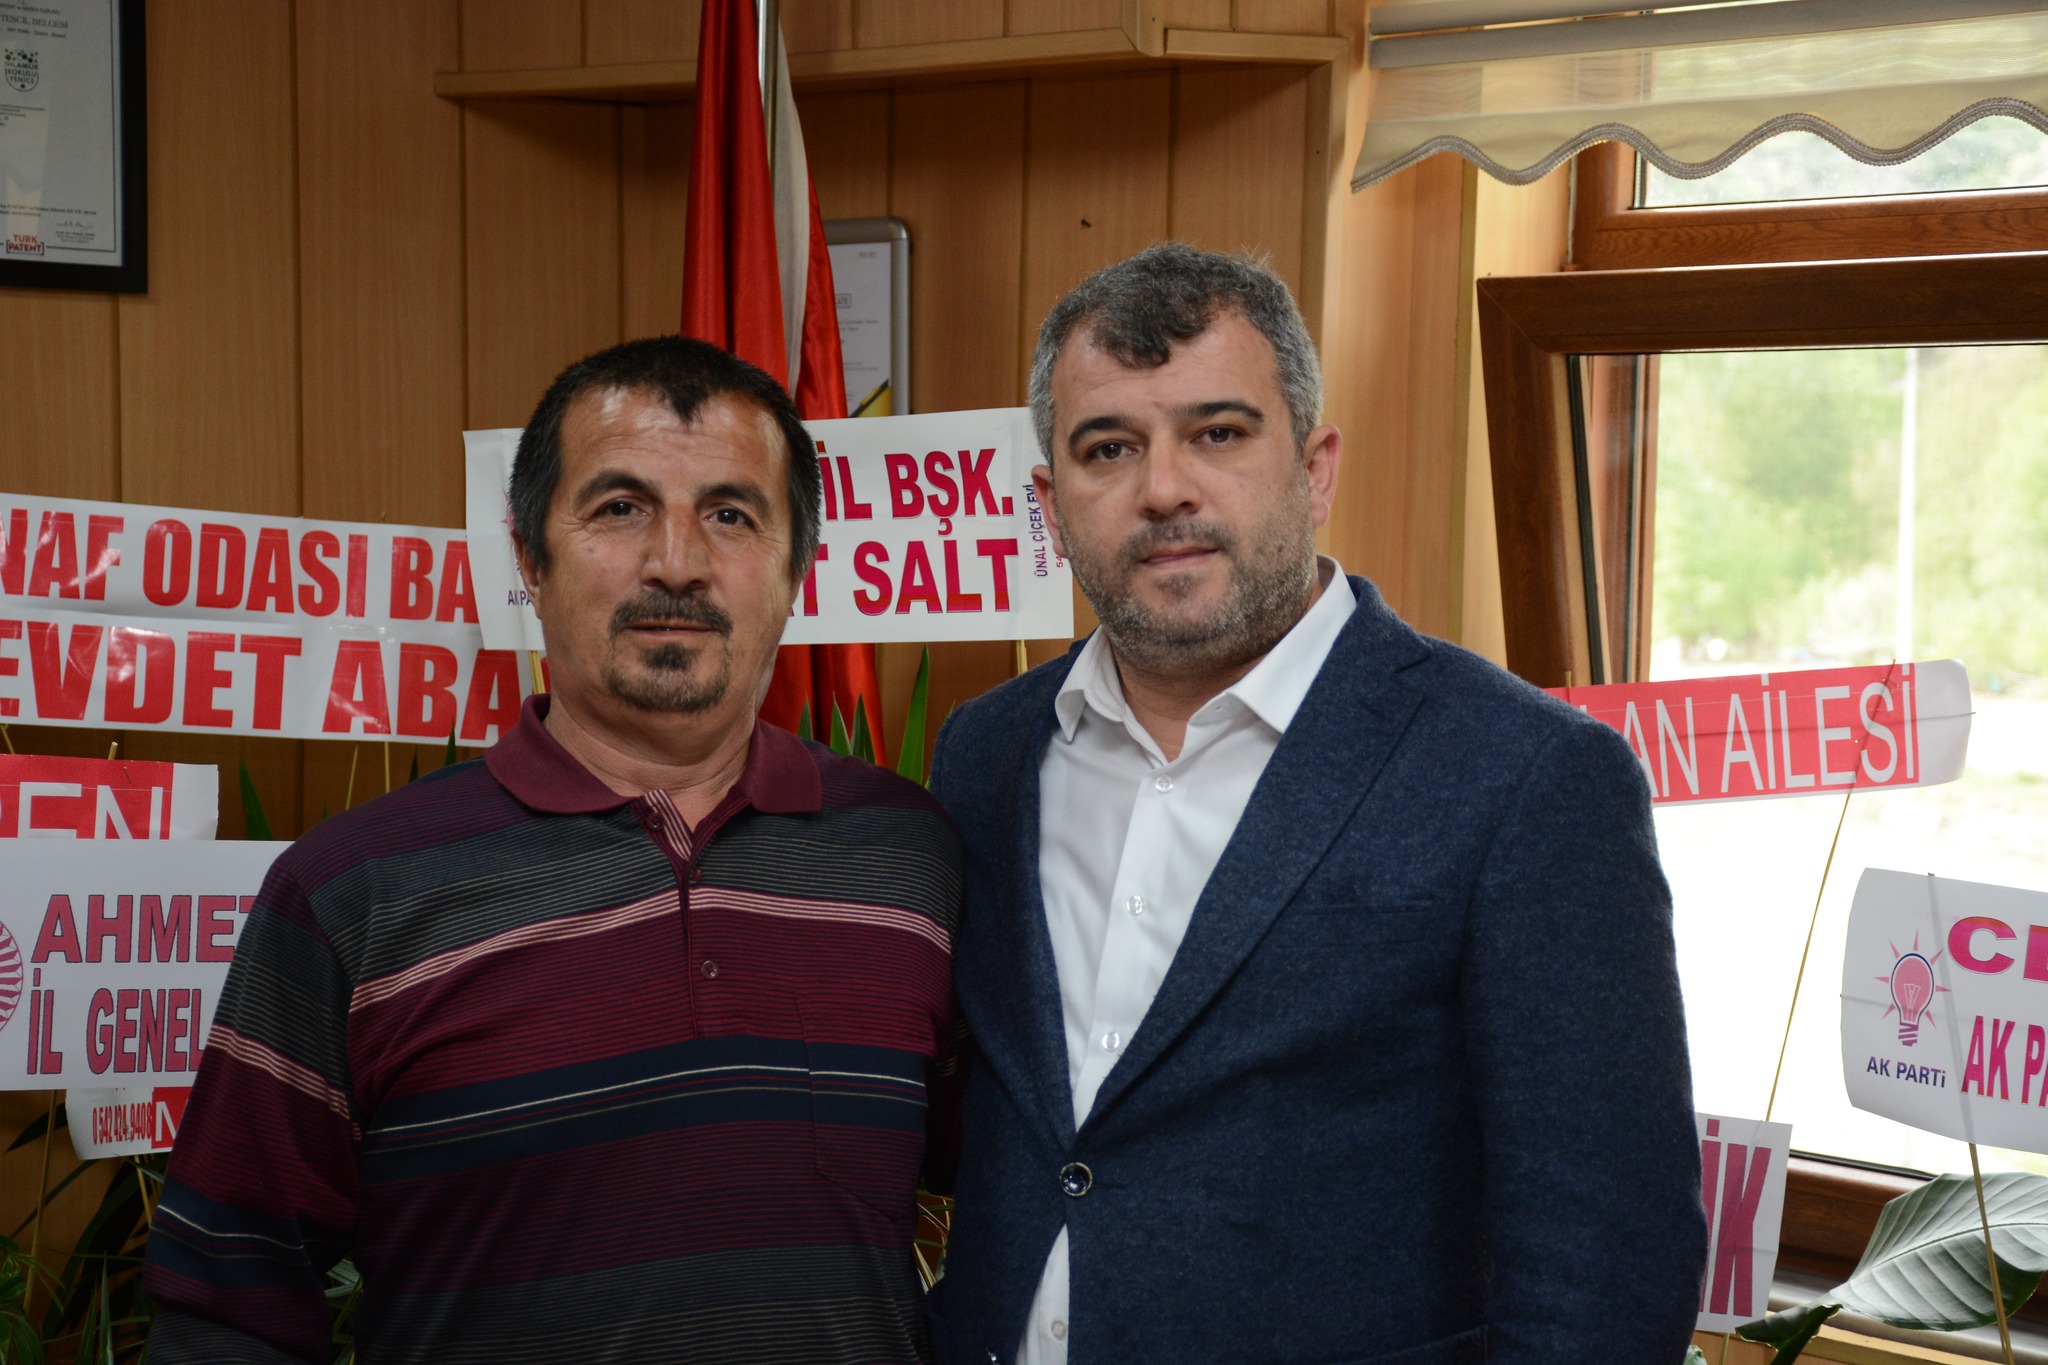 Yenice Belediye Başkanı Ş. Sertaş Karakaş, Nihat Emdi'yi Nezaket Ziyareti İçin Ağırladı